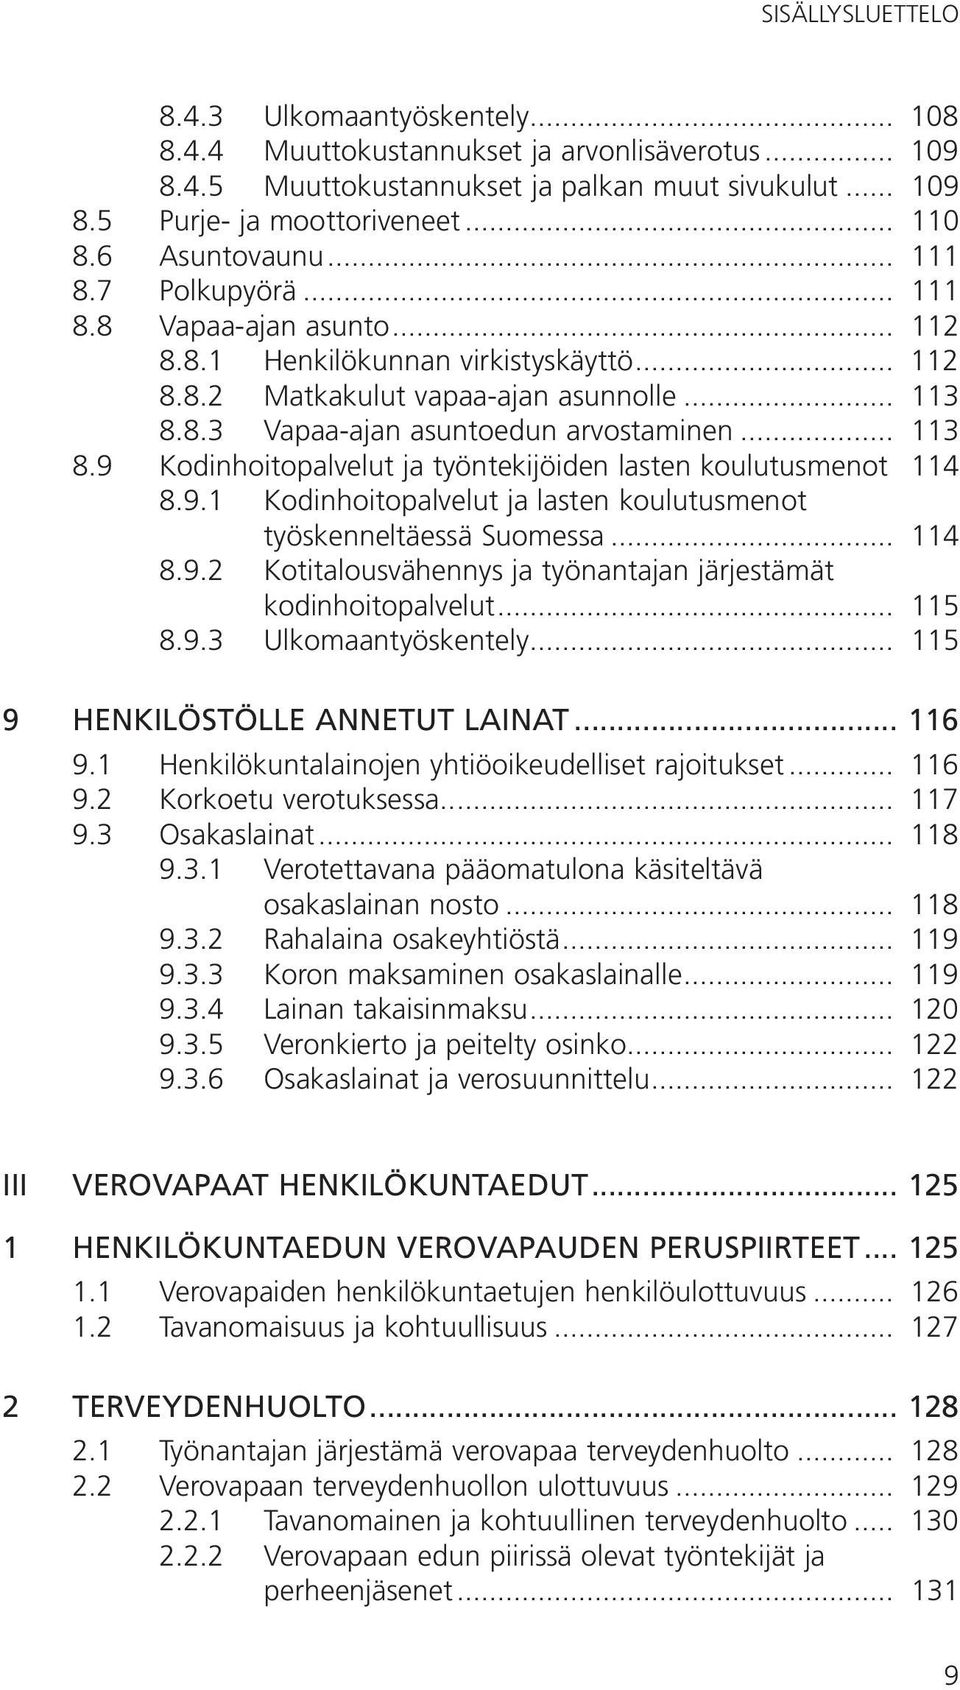 8.3 Vapaa-ajan asuntoedun arvostaminen... 113 8.9 Kodinhoitopalvelut ja työntekijöiden lasten koulutusmenot. 114 8.9.1 Kodinhoitopalvelut ja lasten koulutusmenot. työskenneltäessä Suomessa... 114 8.9.2 Kotitalousvähennys ja työnantajan järjestämät.